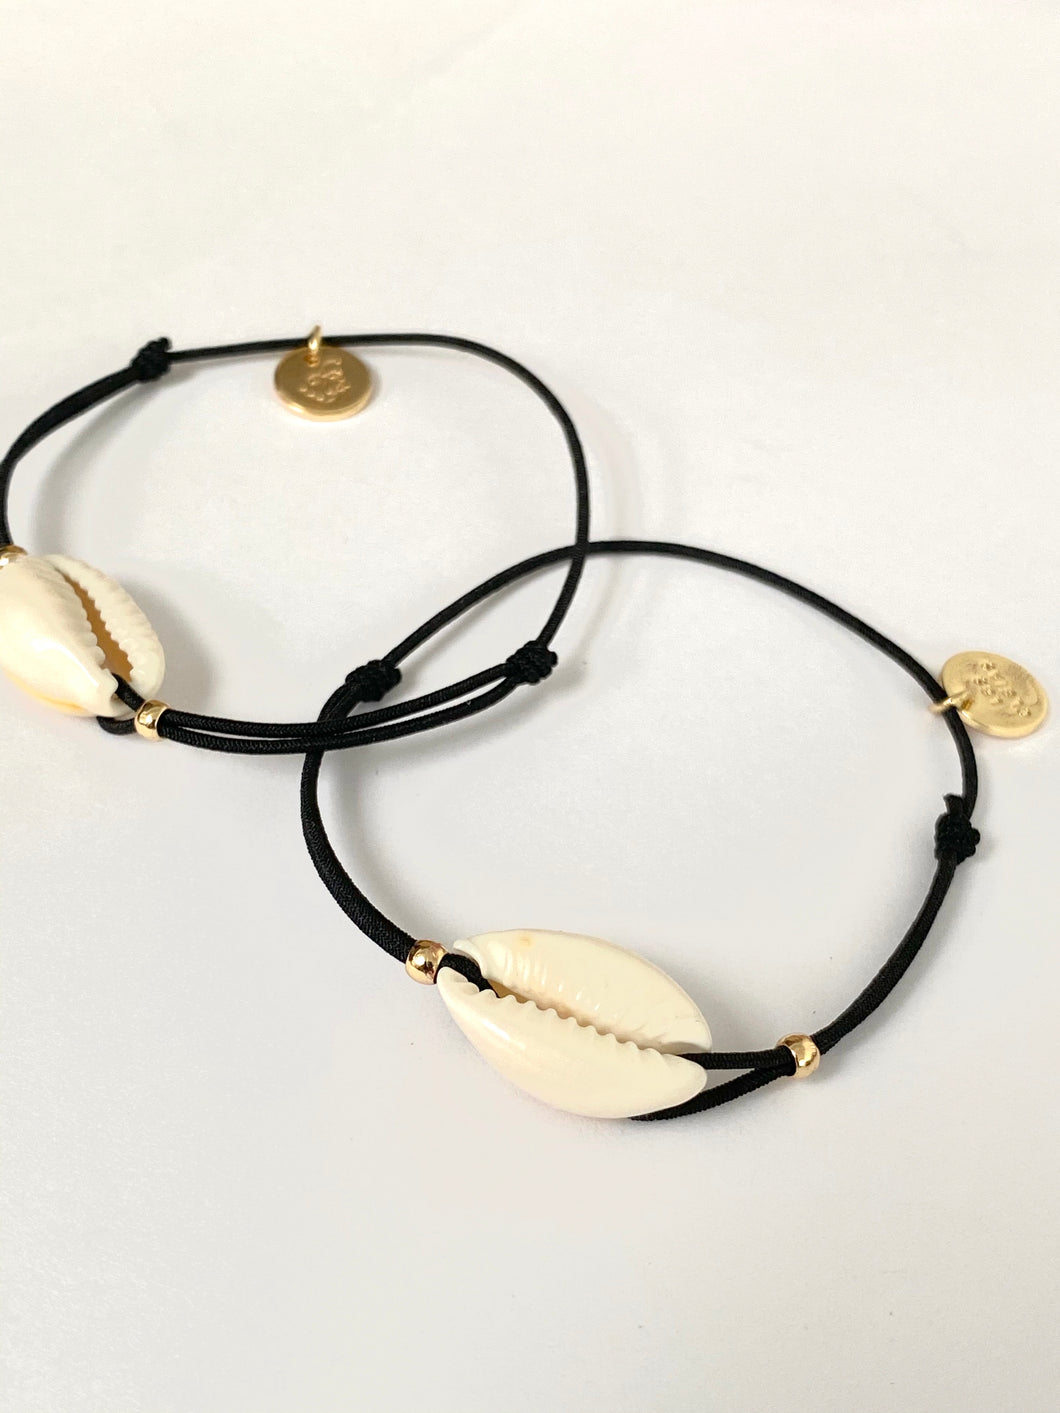 Shell bracelet on elastic string